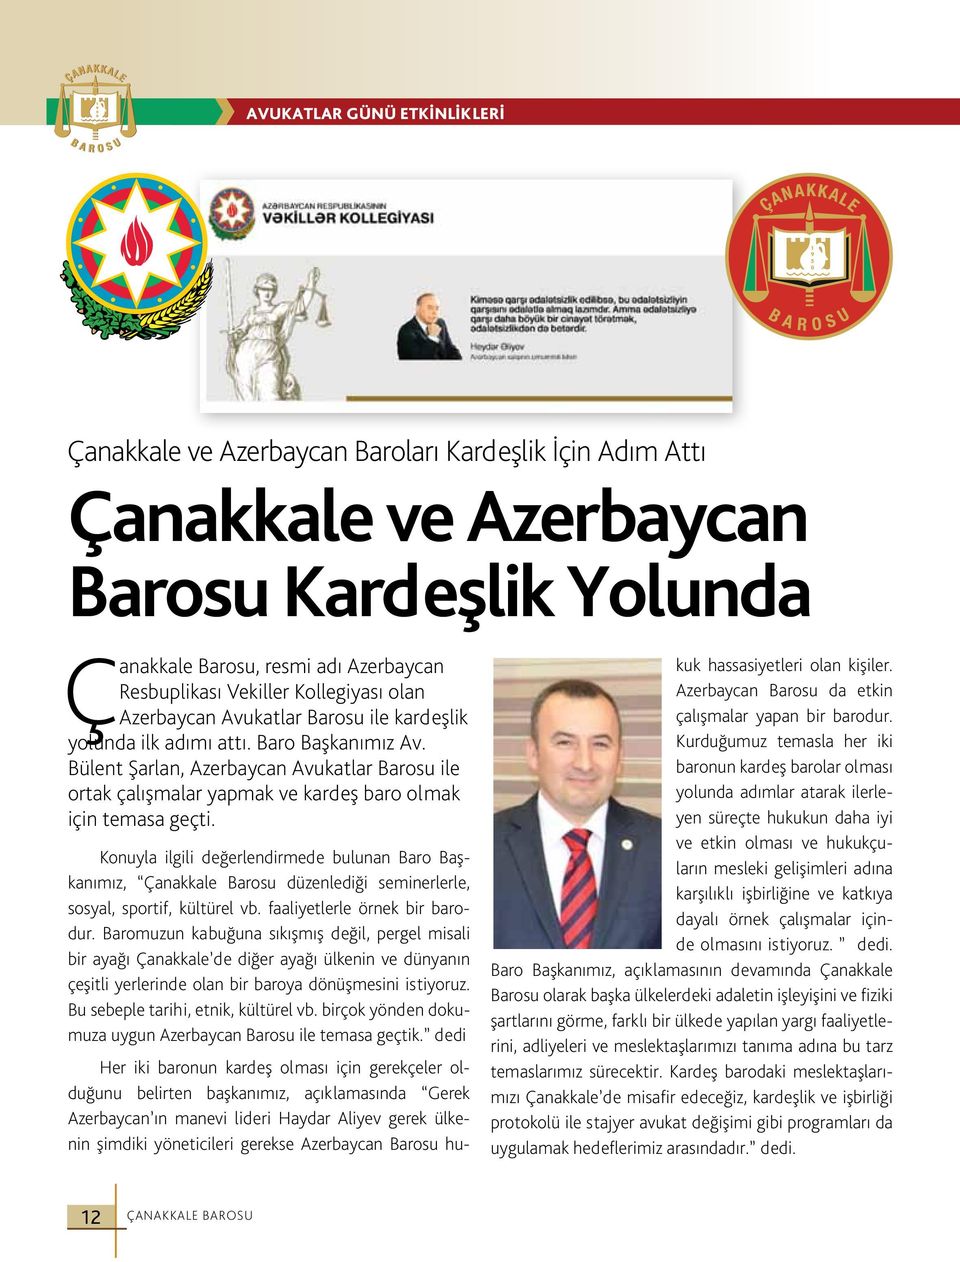 Bülent Şarlan, Azerbaycan Avukatlar Barosu ile ortak çalışmalar yapmak ve kardeş baro olmak için temasa geçti.